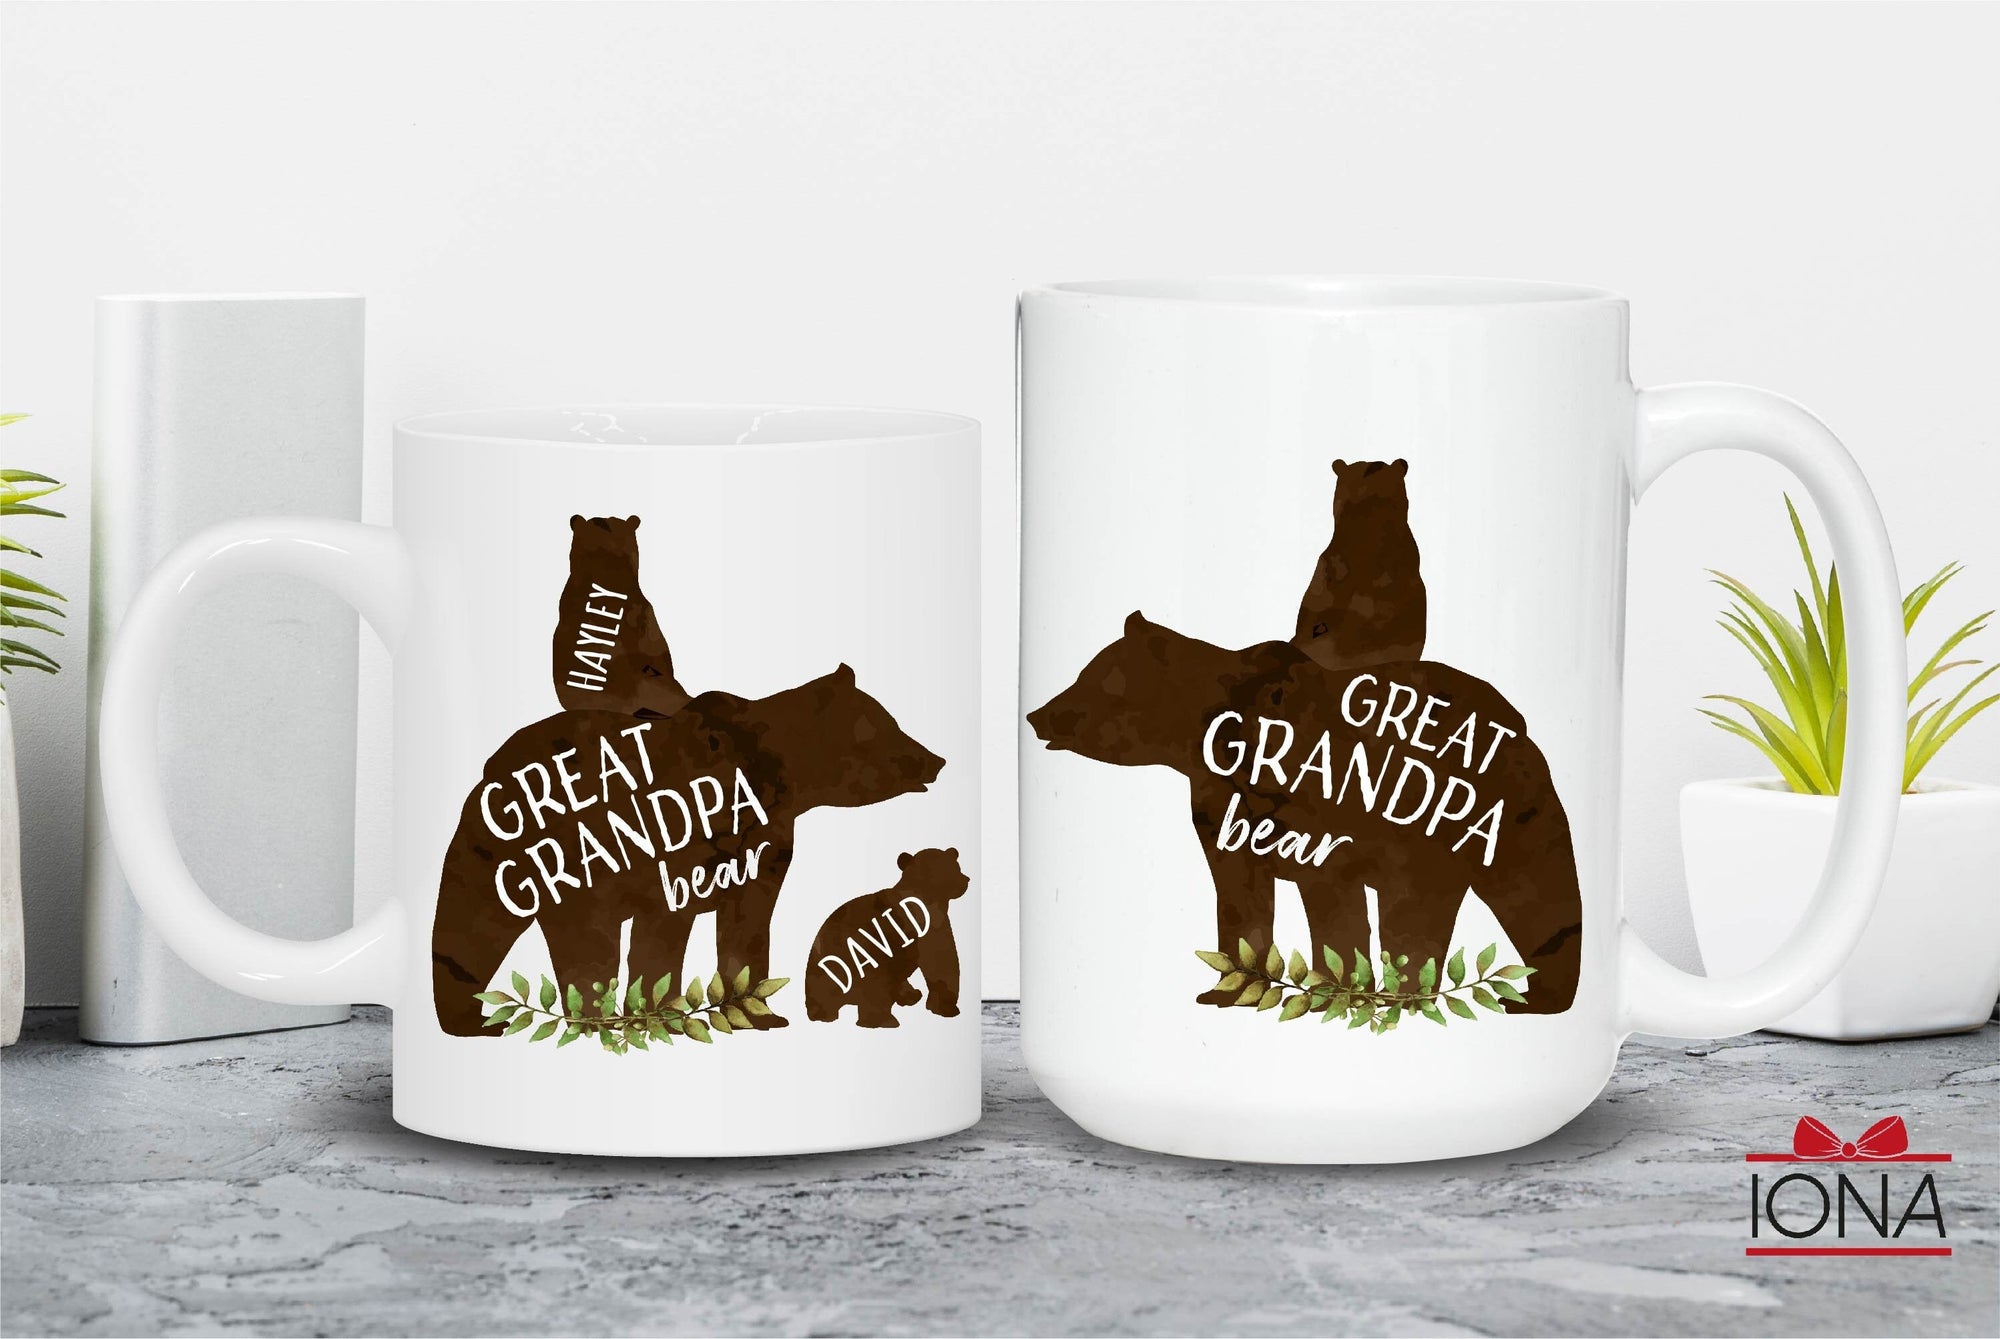 Great Grandpa Bear Mug - Great Grandpa Bear with Cubs Coffee Mug - Personalized Great Grandpa Bear Mug - Great Grandpa Gift - Great Papa Mug